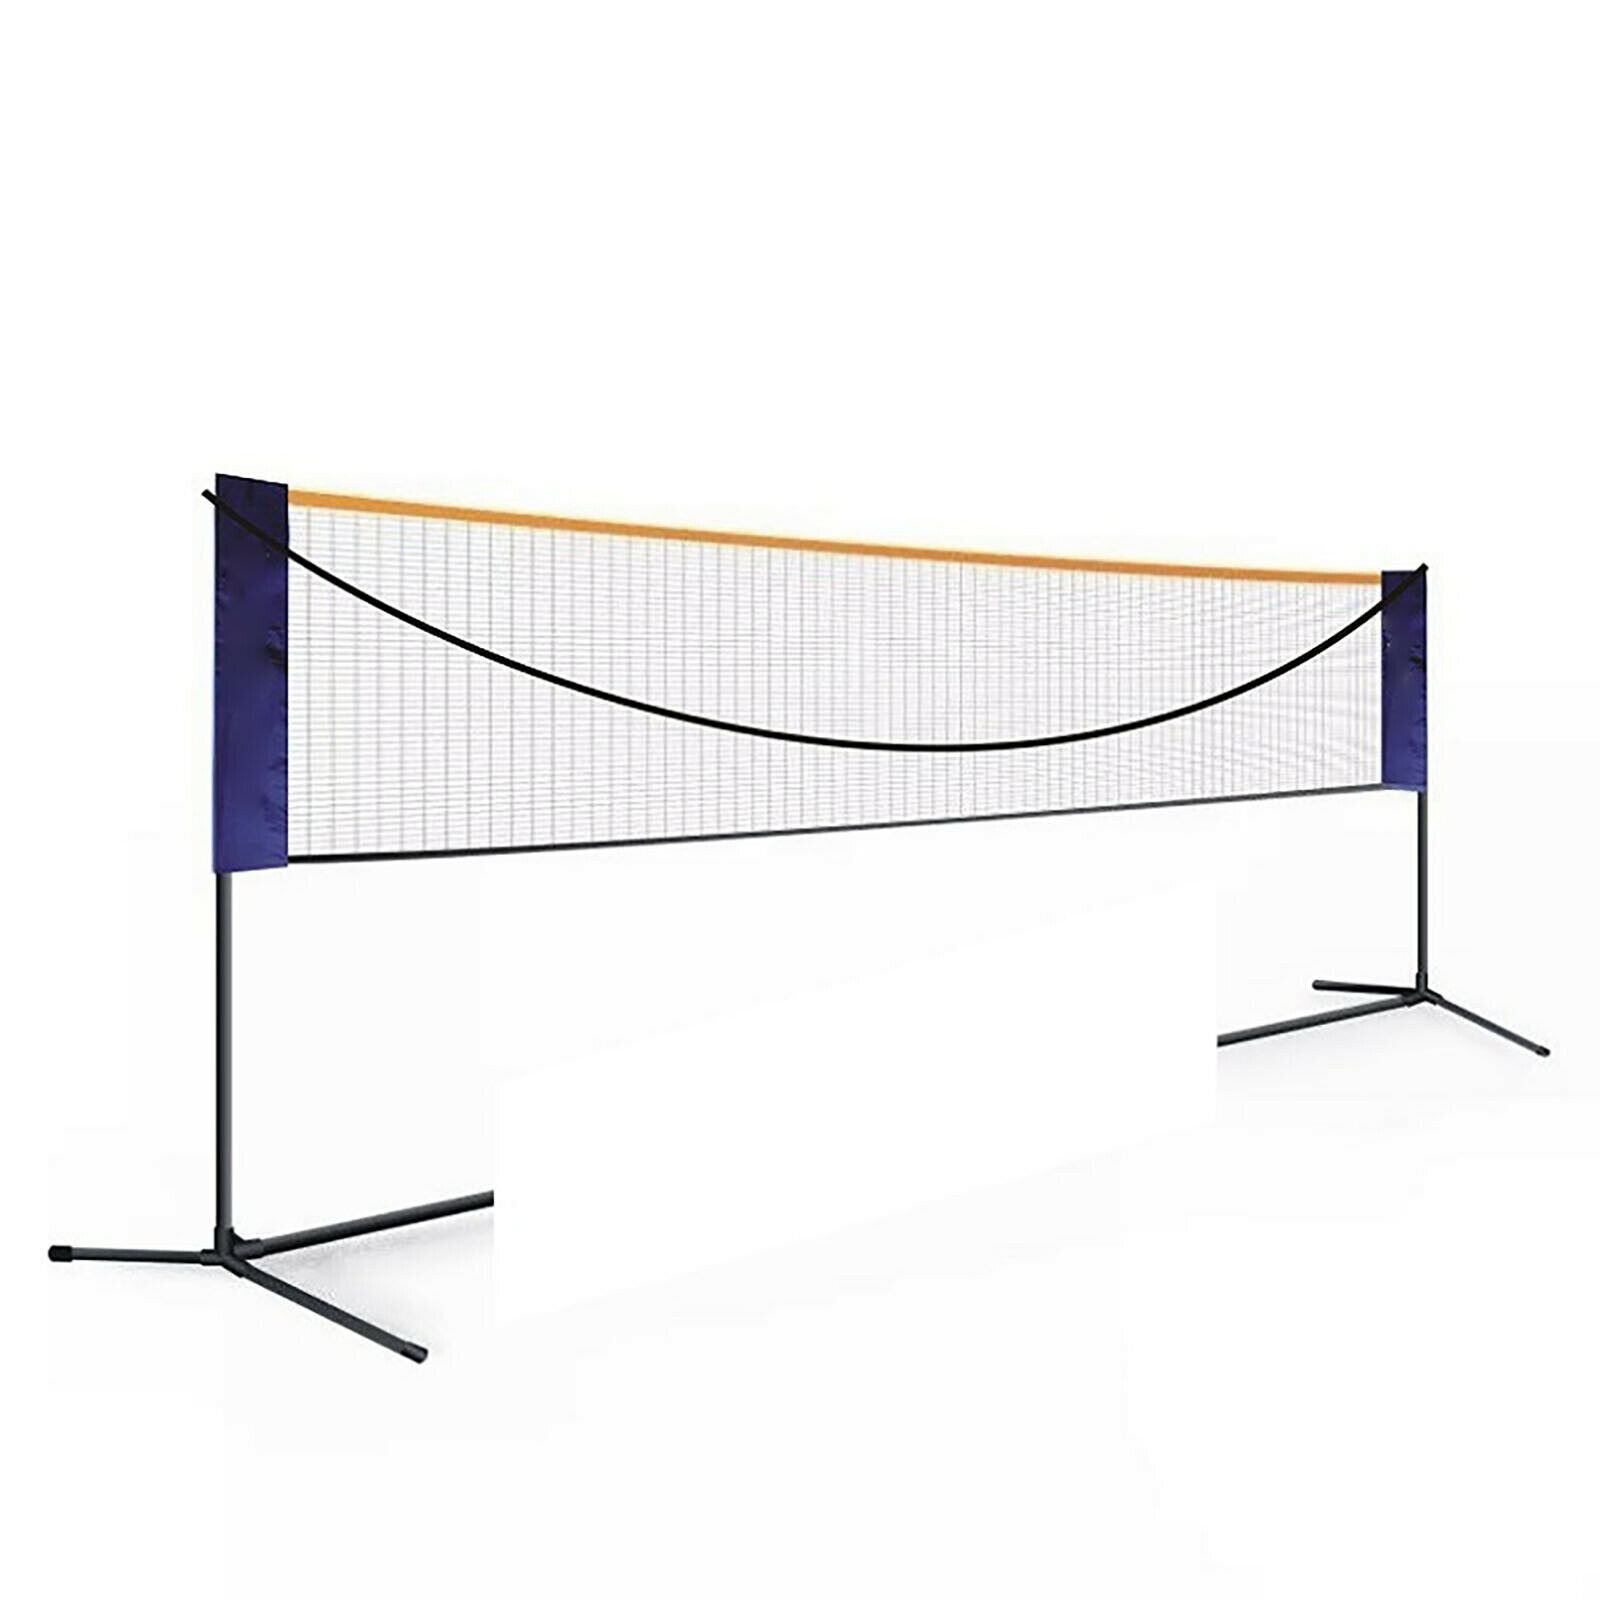 Filet de badminton Réglable en hauteur Filet de tennis Filet de